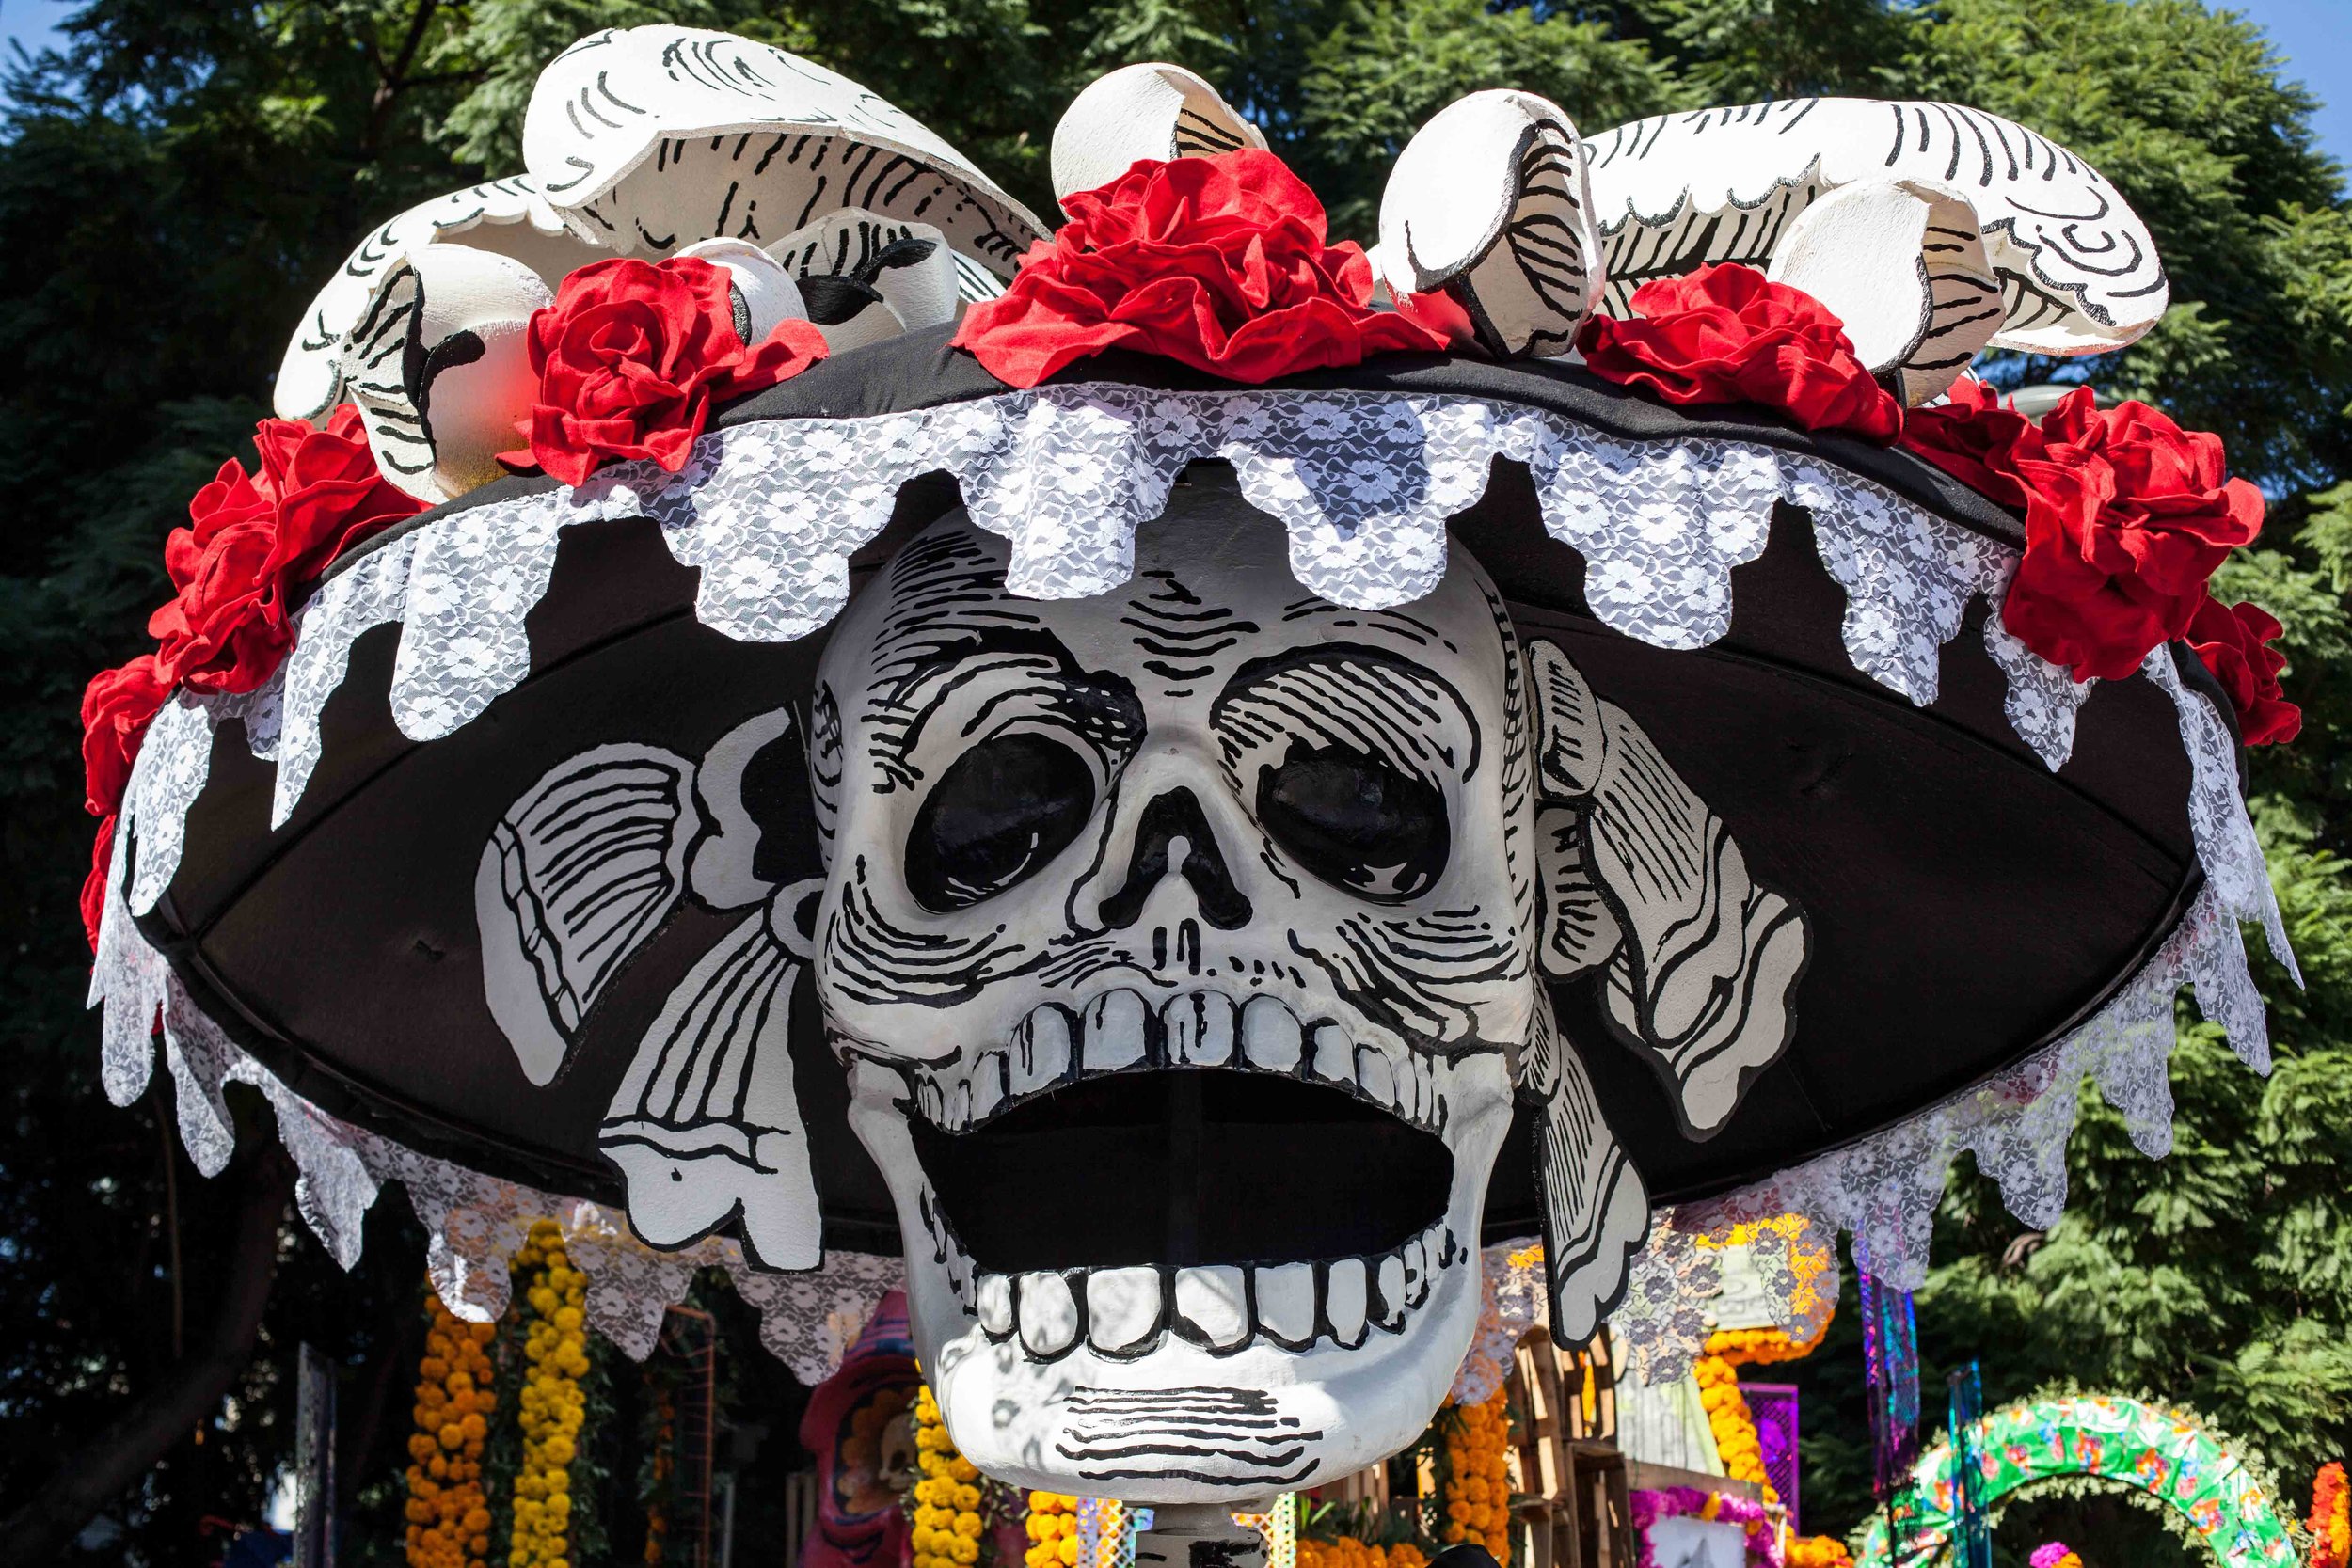 In 2017 Mexico City held it's first Day of the Dead/Día de Muertos parade.